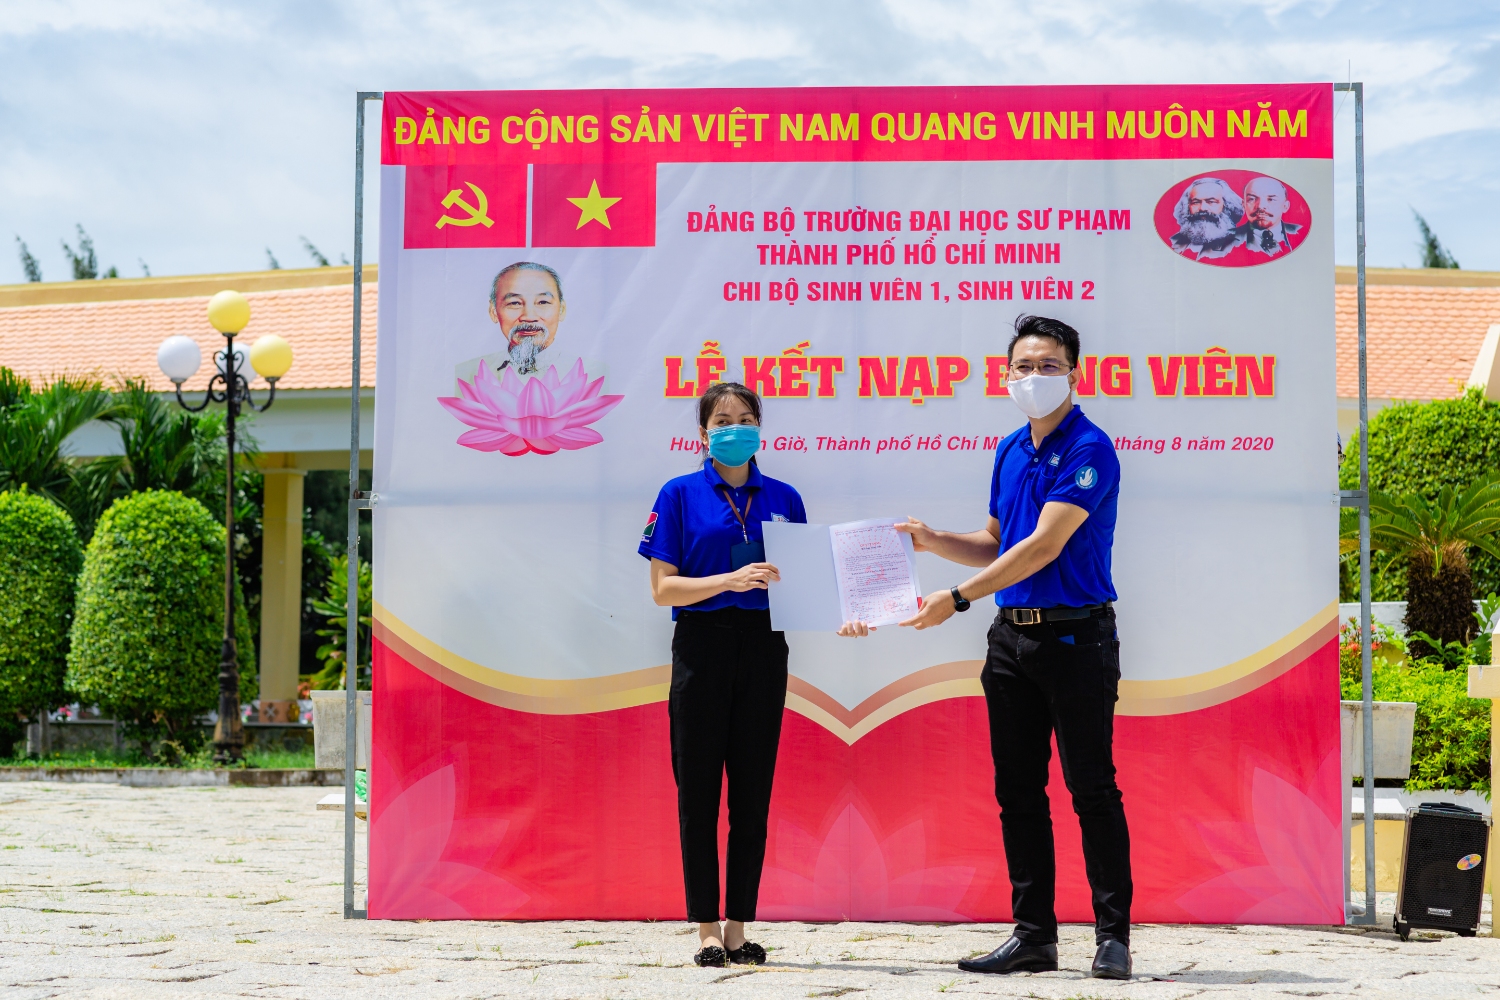 Đồng chí Lâm Thanh Minh - Bí thư Chi bộ Sinh viên 2 trao quyết định kết nạp Đảng viên mới cho quần chúng được kết nạp